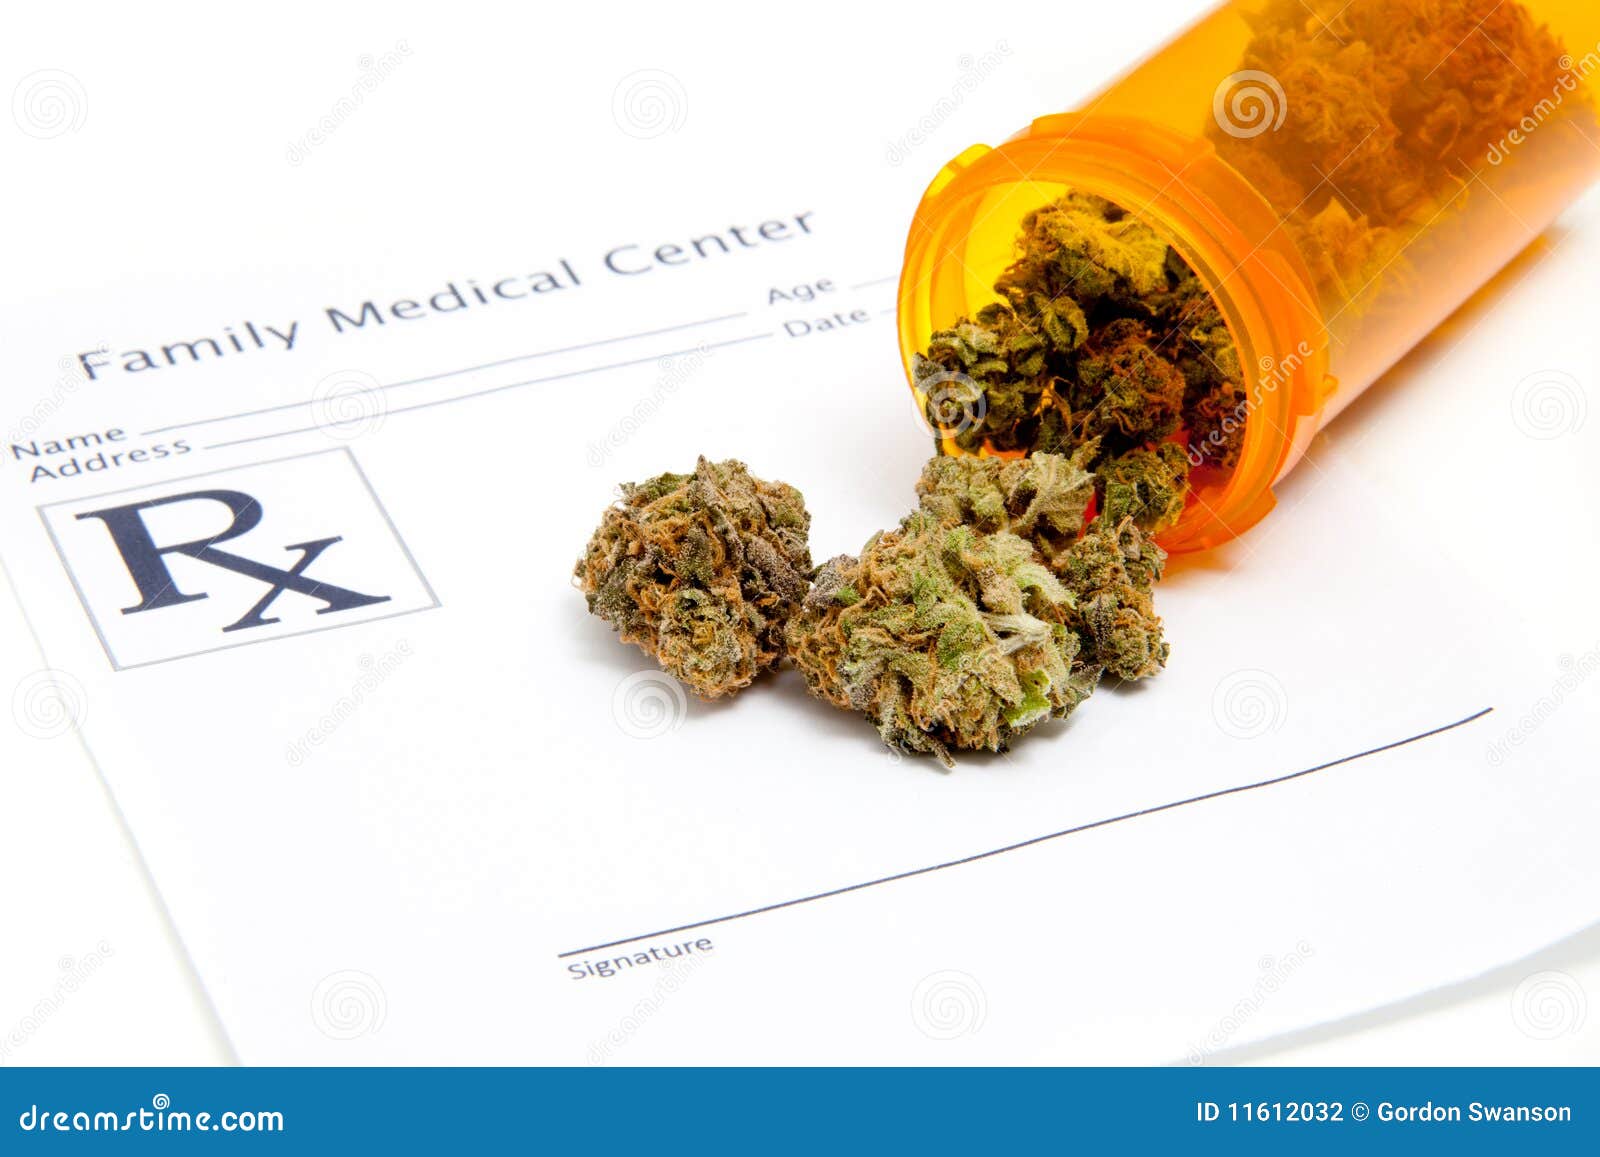 医用大麻的利与弊:我们应该将其合法化吗?替代医学和治愈疗法文章|治疗和治疗中心| SteadyHealth.com - 雷竞技RAYBET官网